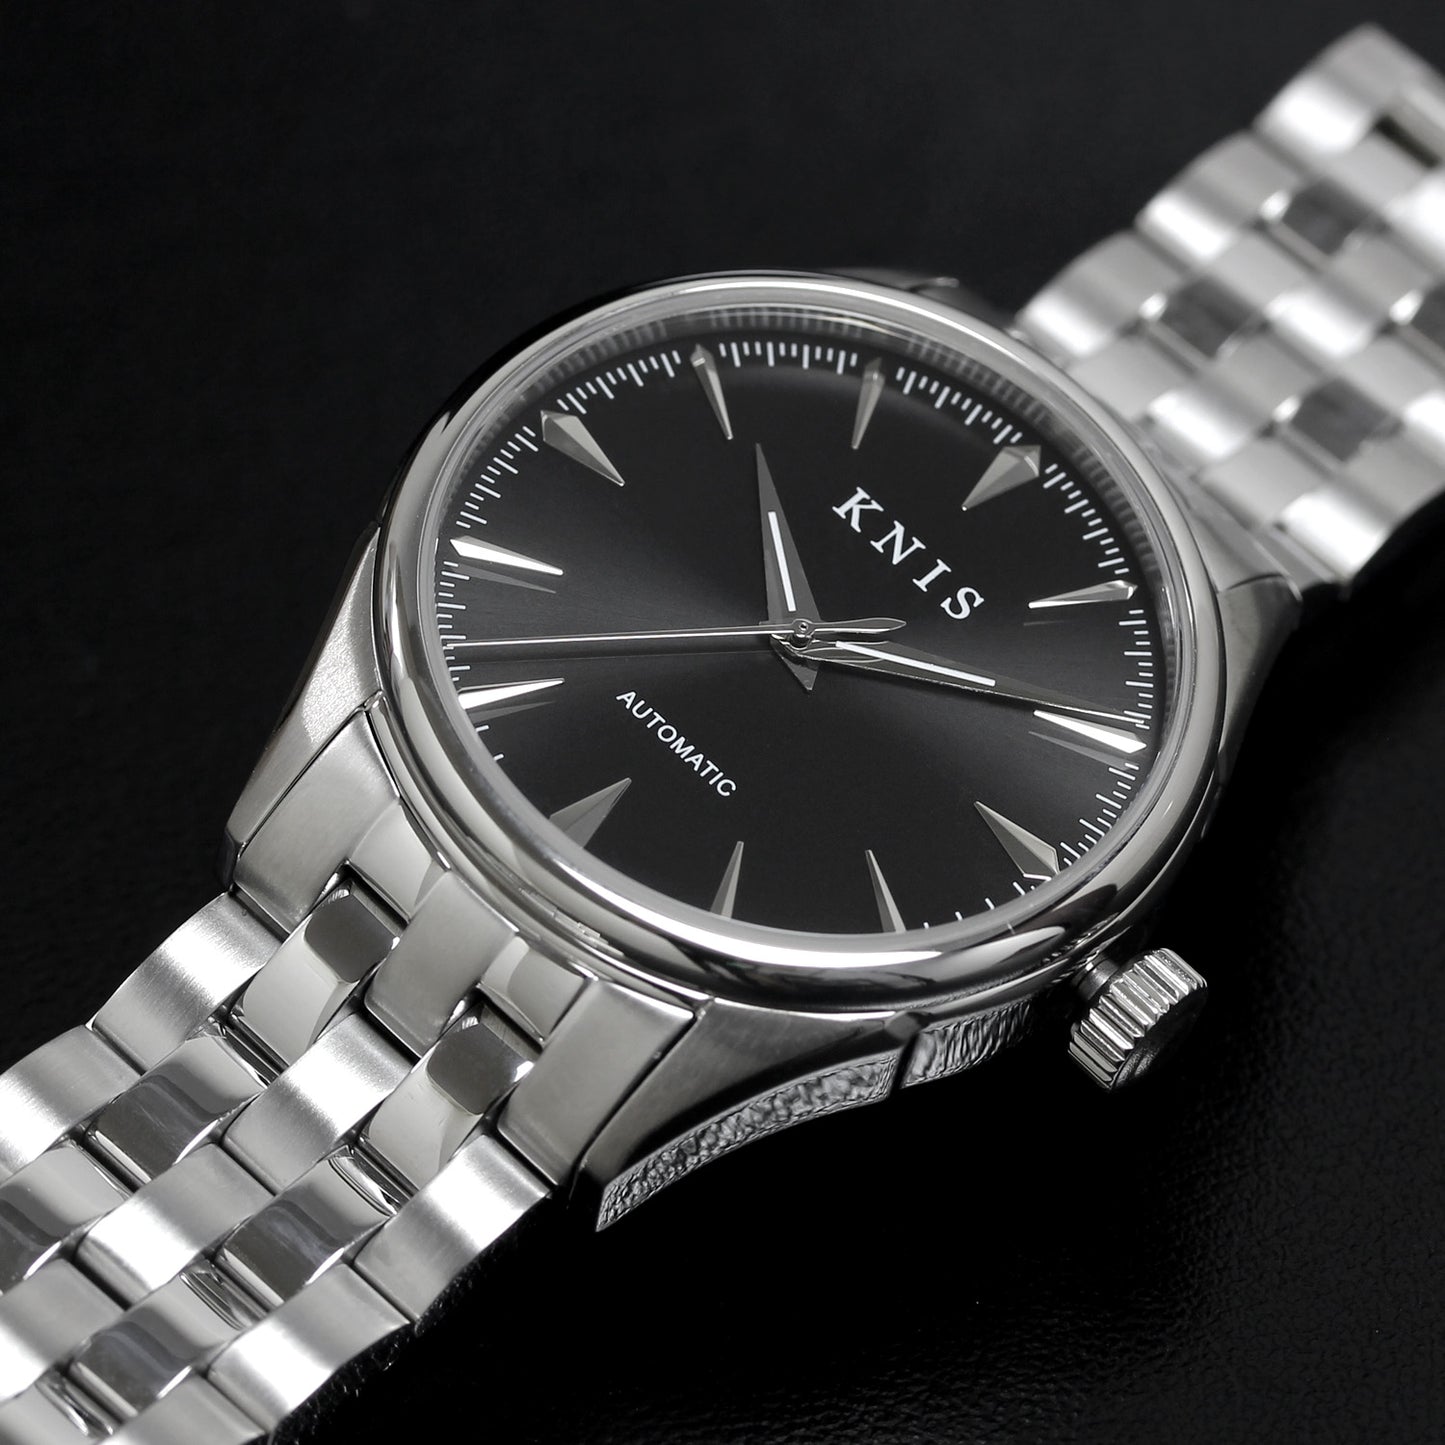 KNIS 腕時計 自動巻き サンレイダイアル ブラック KN001-BK